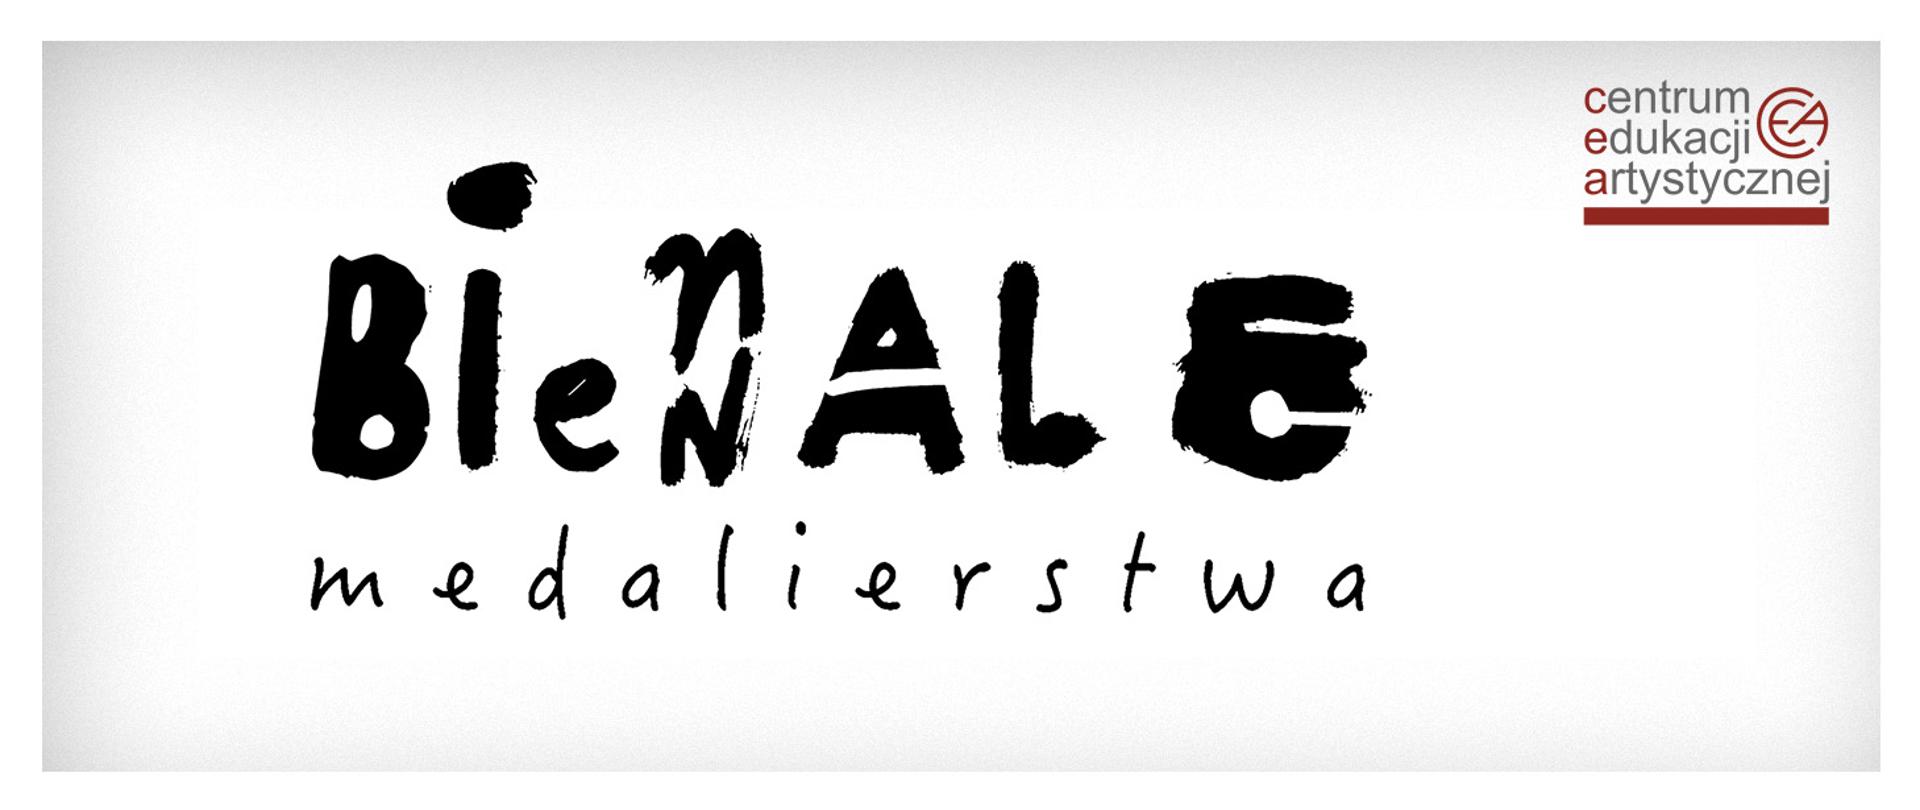 Logotyp Biennale medalierstwa, w rogu logotyp centrum edukacji artystycznej